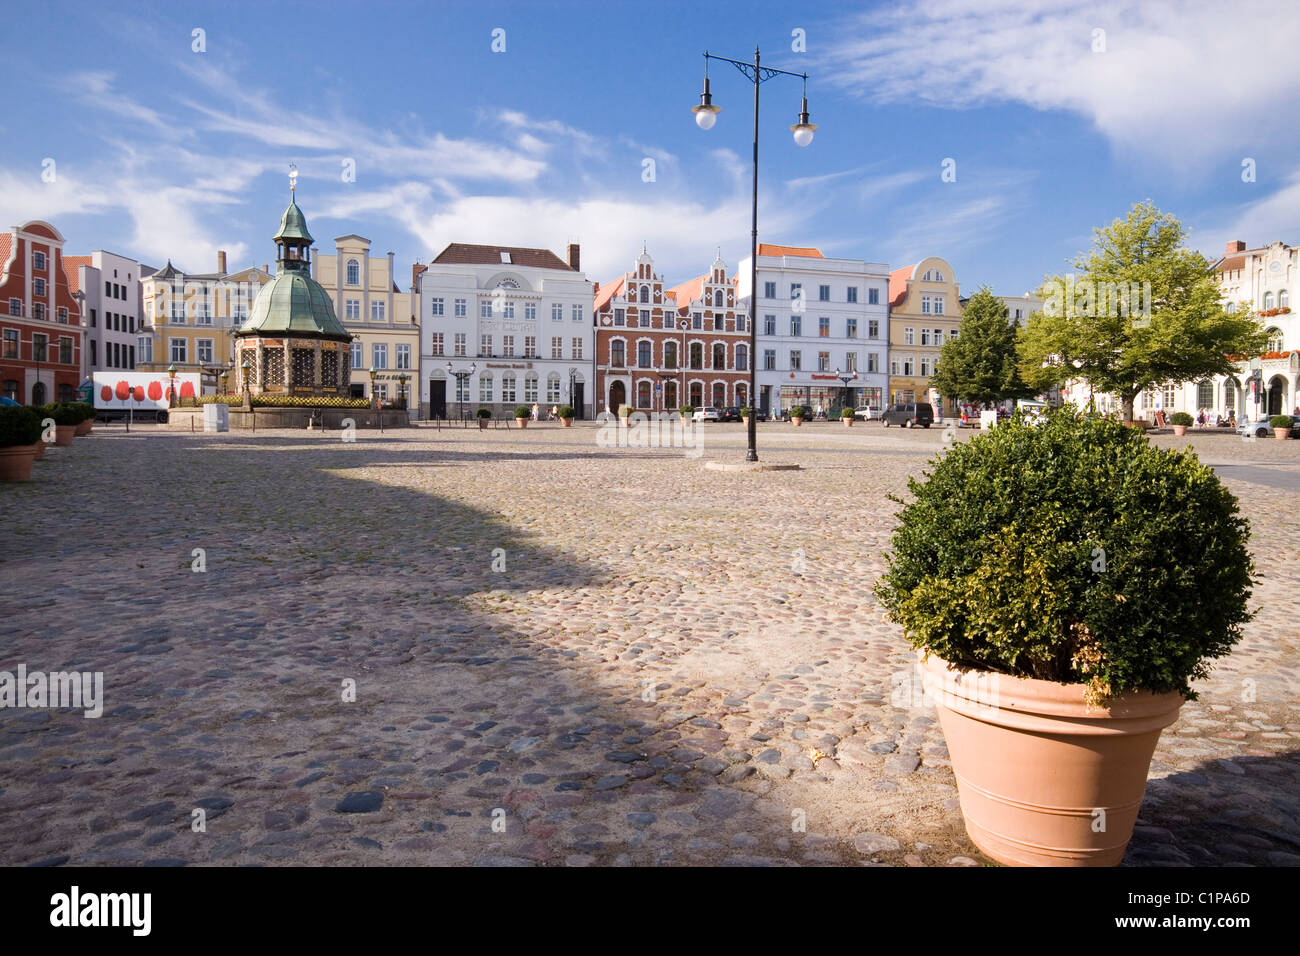 Deutschland, Wismar, Marktplatz mit Topfpflanze im Vordergrund Stockfoto